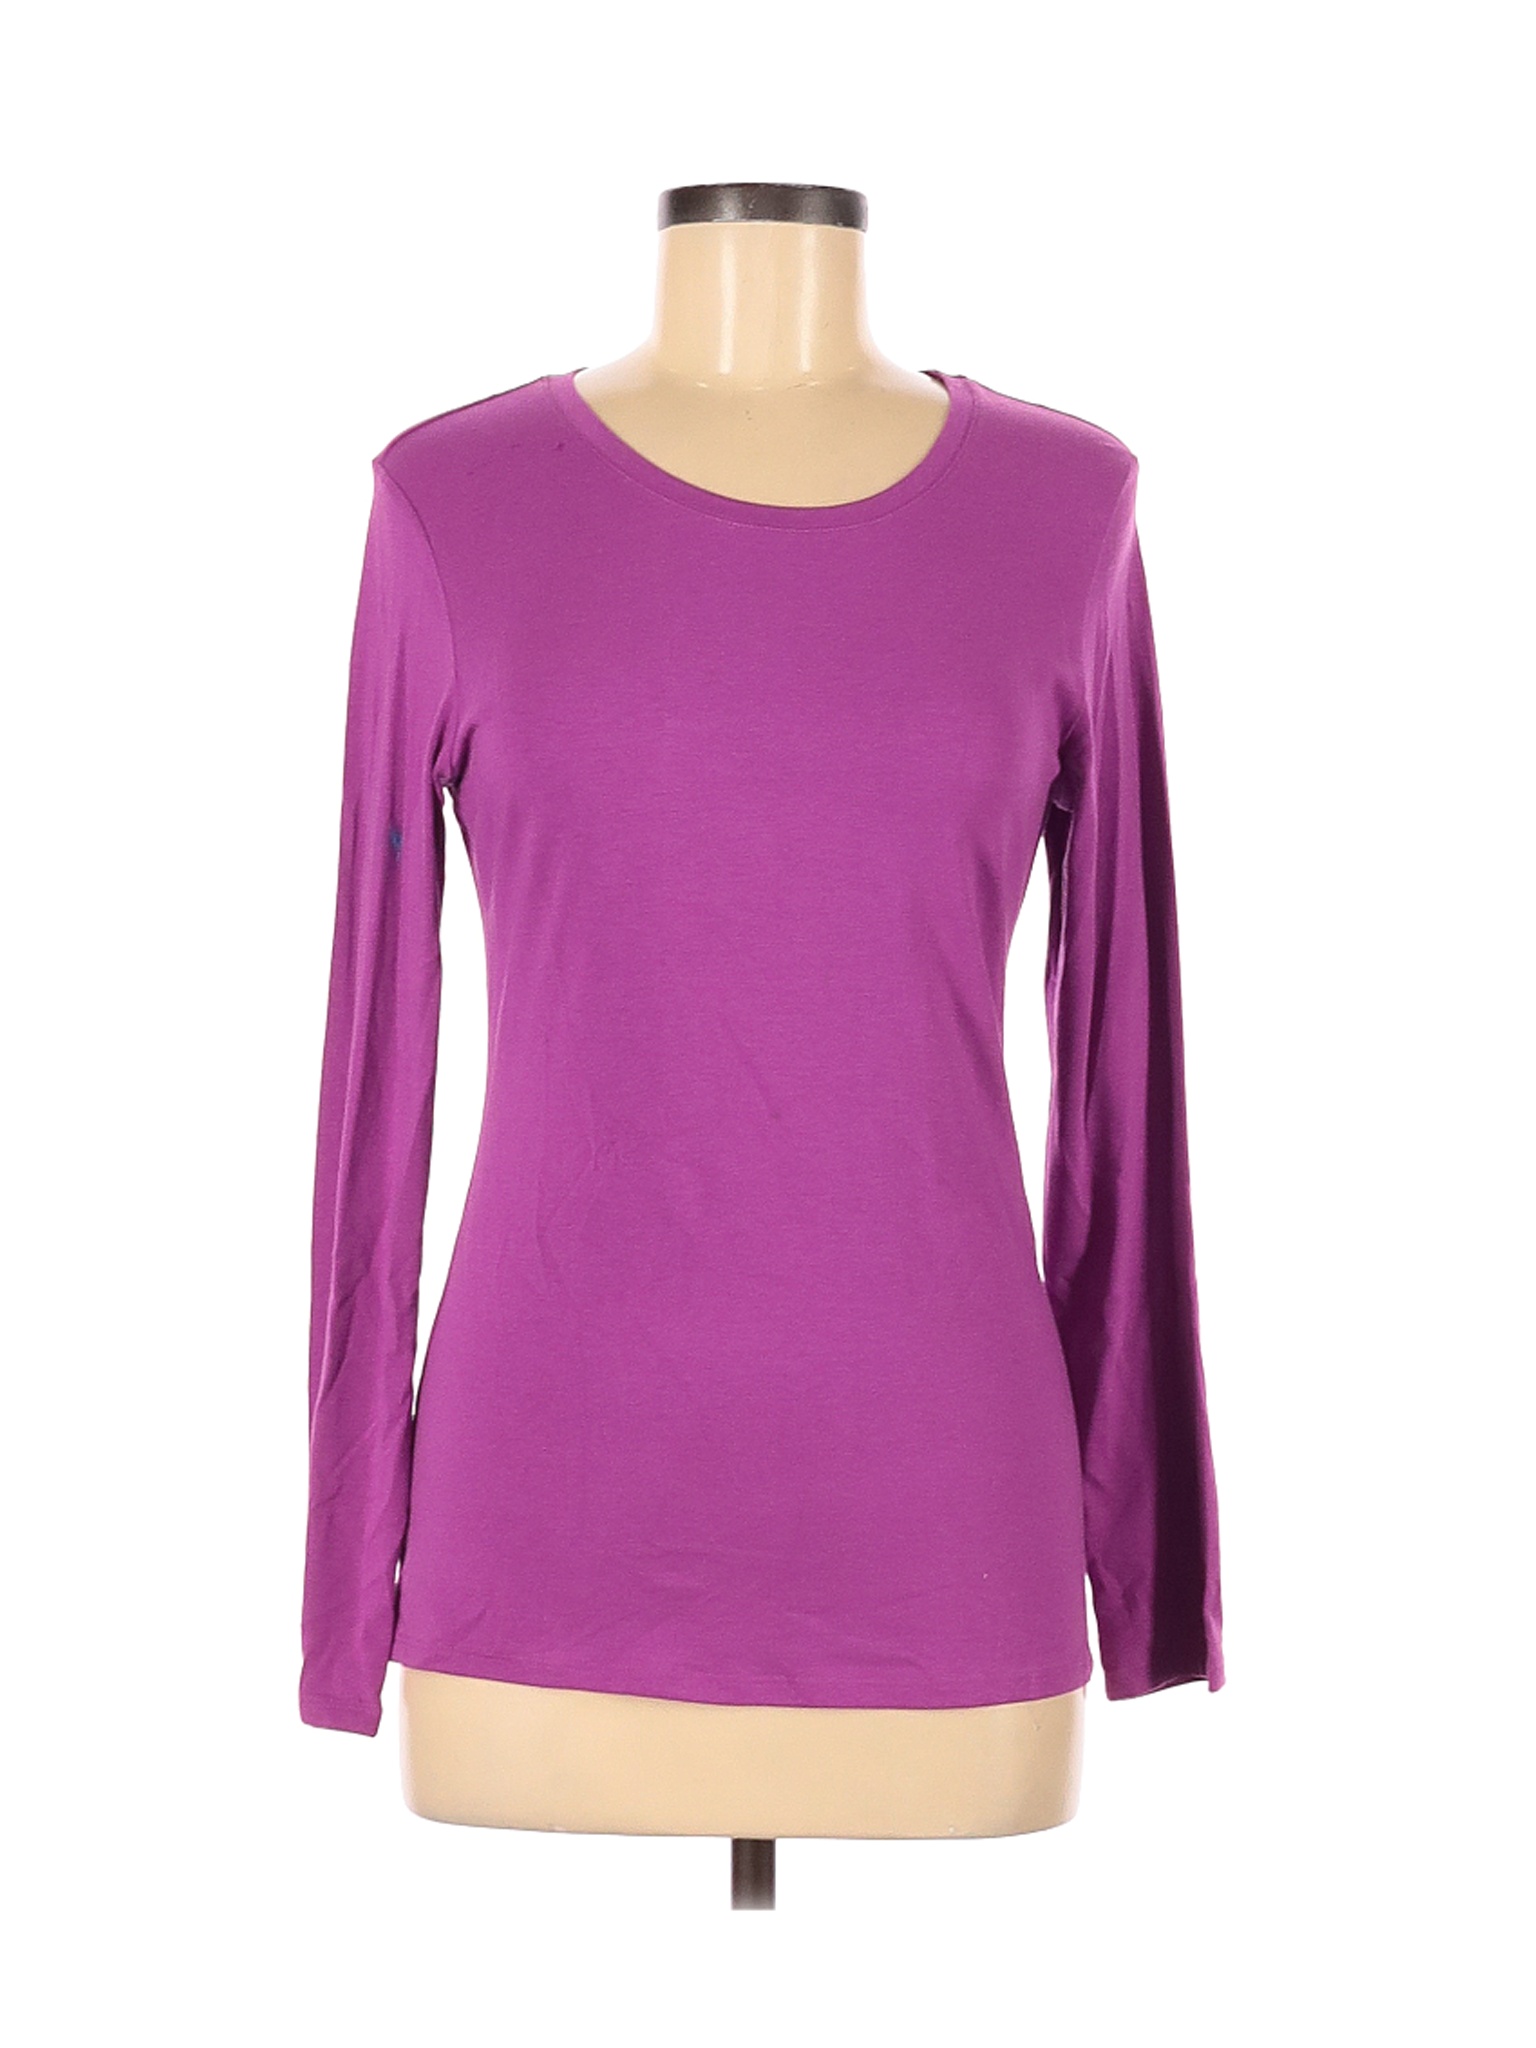 Felina Women Purple Long Sleeve T-Shirt M | eBay